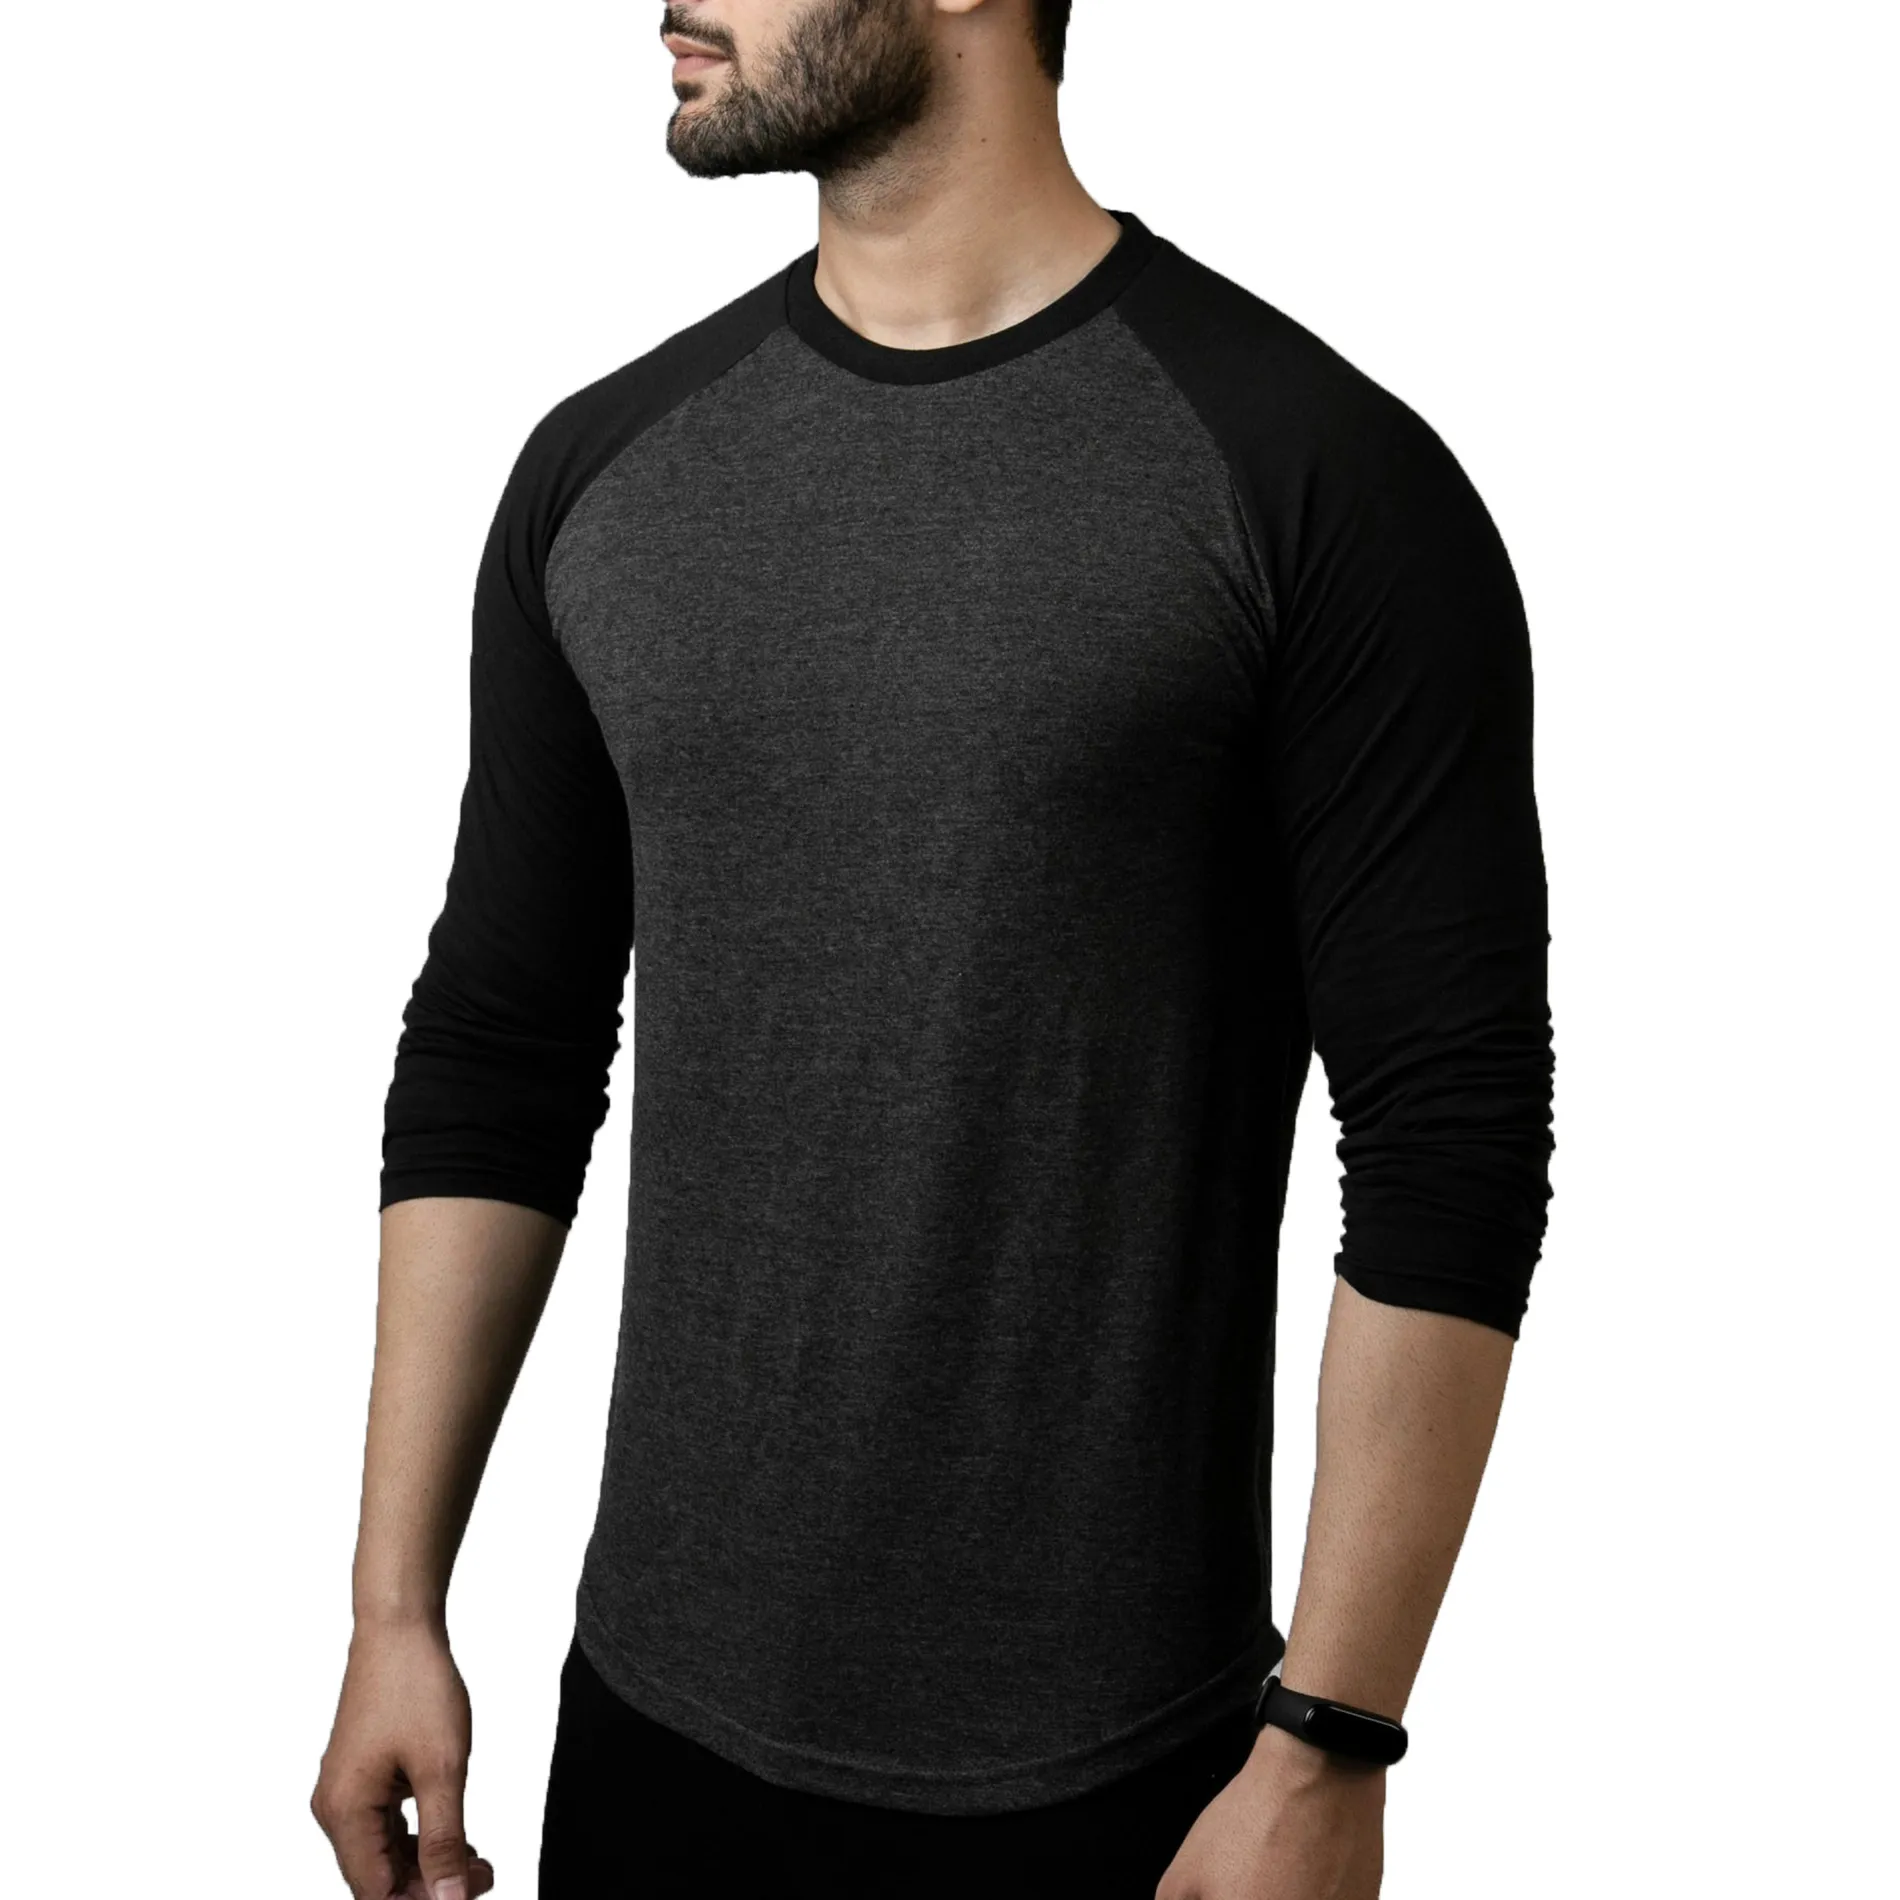 Oem hizmeti yaz spor uzun kollu Raglan dikiş erkek spor T Shirt siyah boyalı gri paneli en iyi tasarım rahat erkek